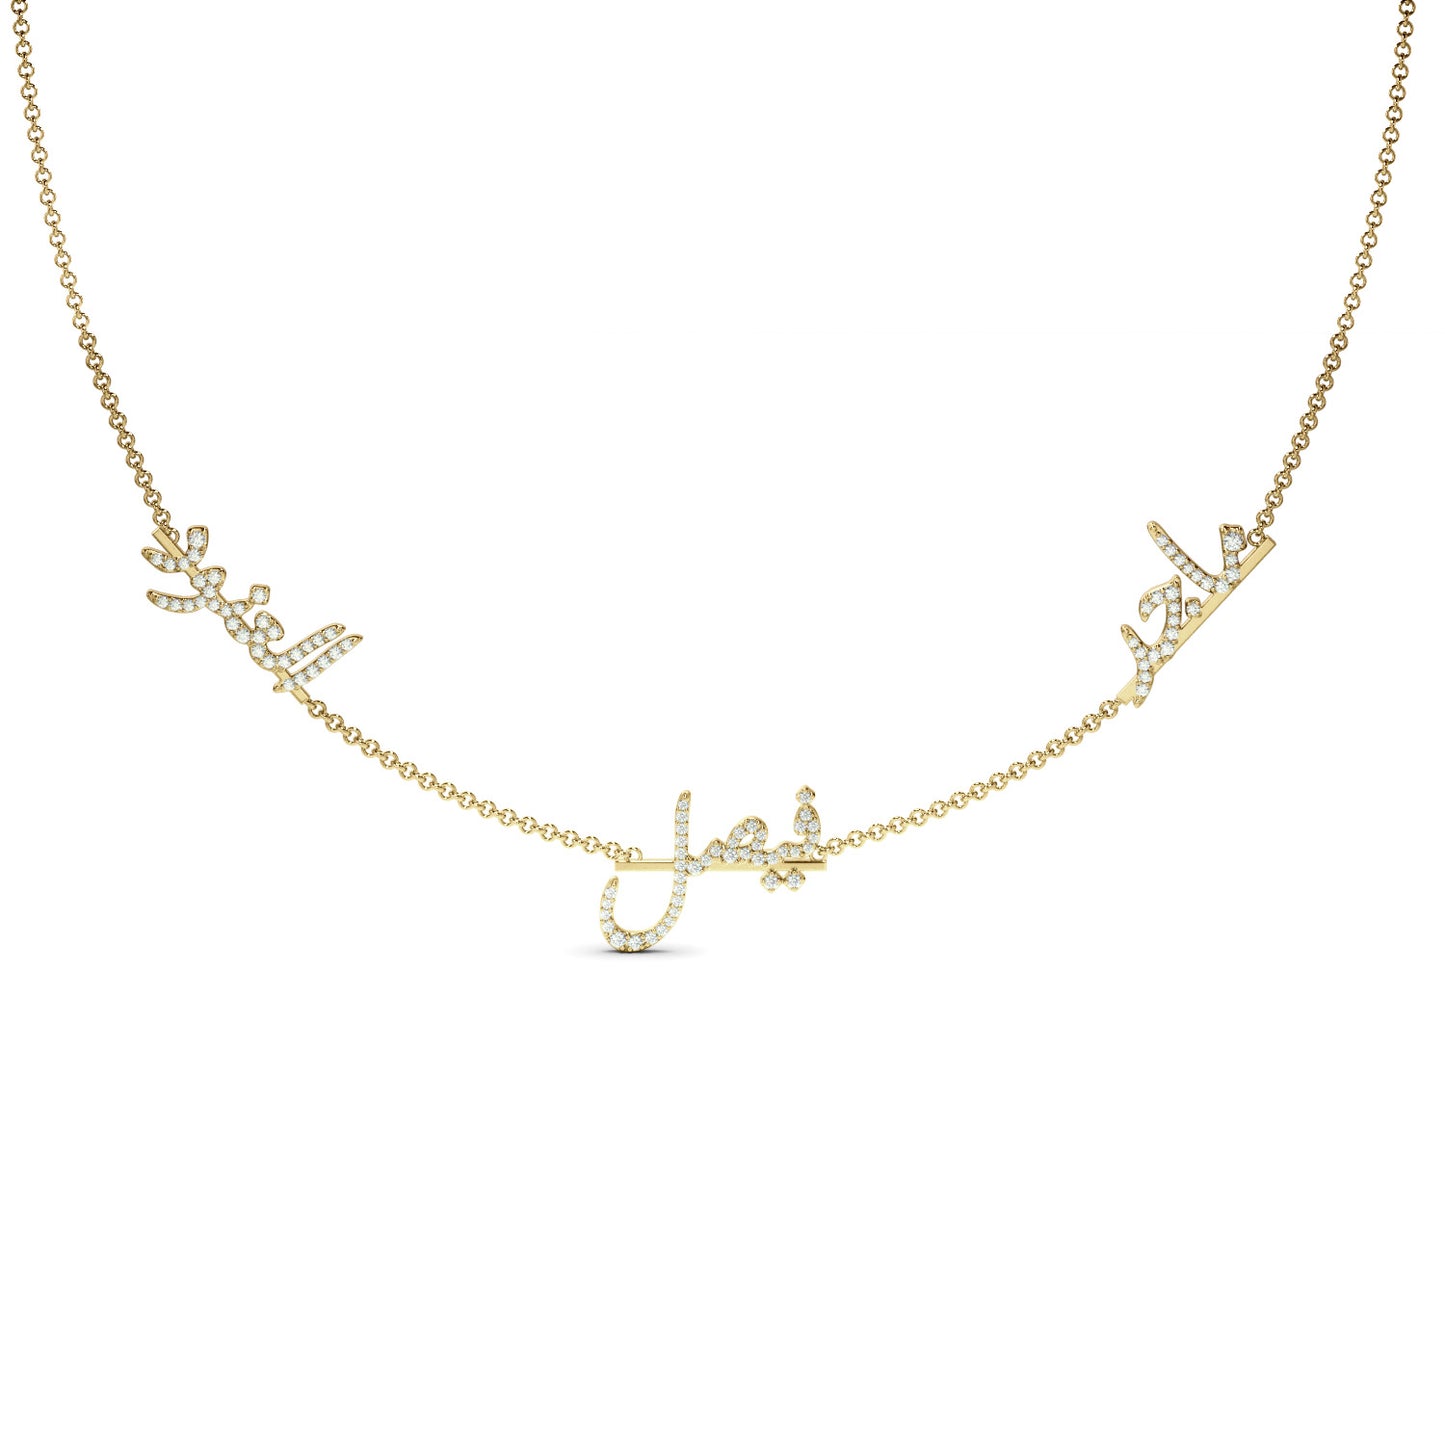 Customize your Three-Name Pavé Diamond Necklace